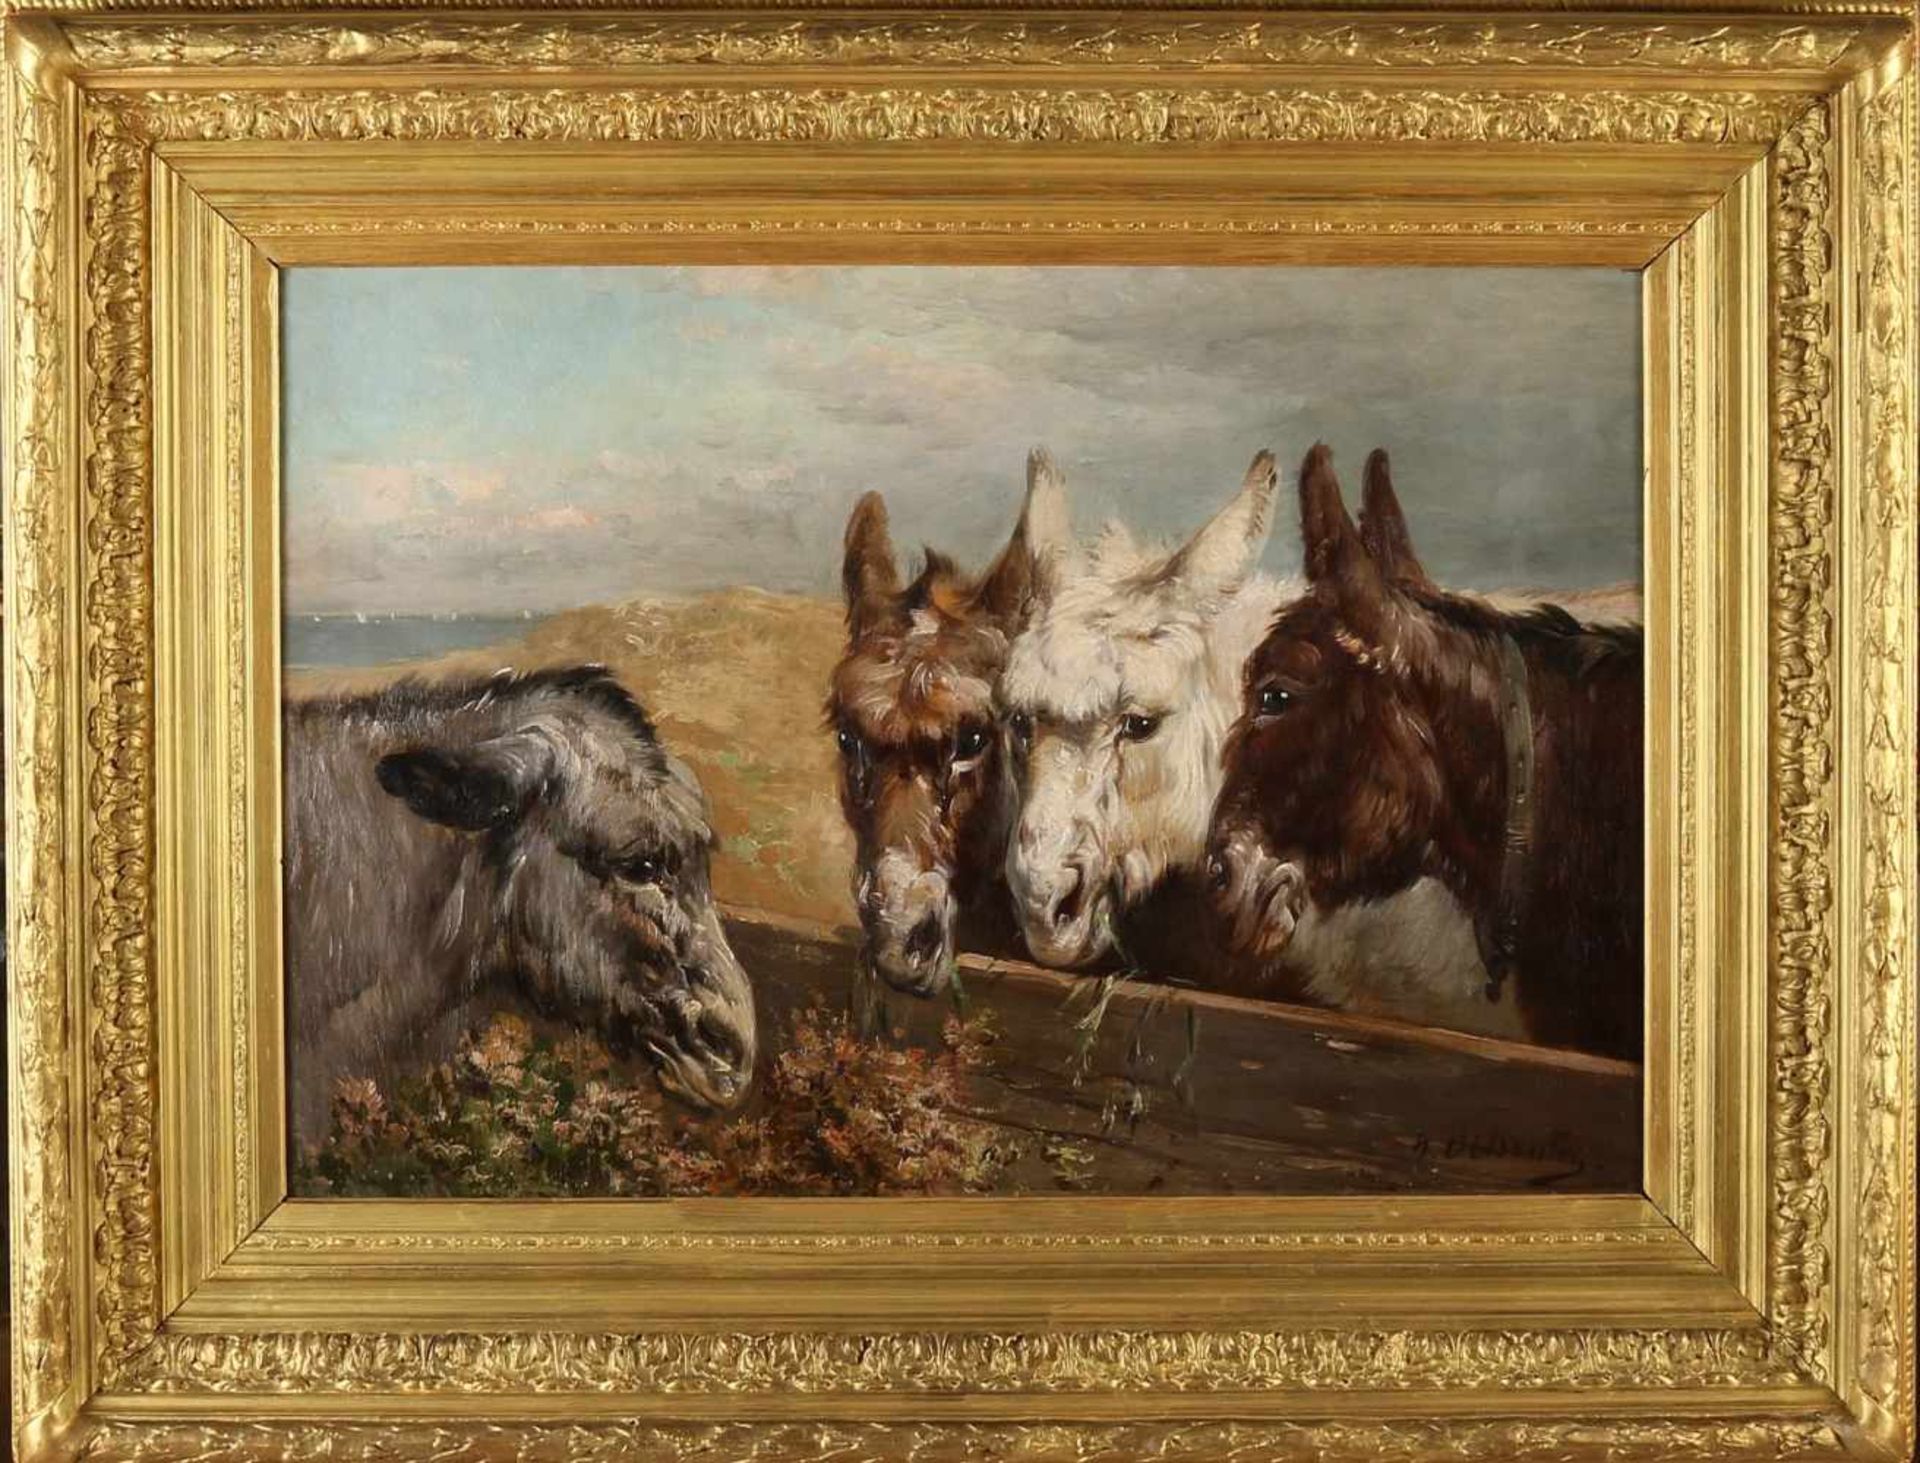 Henry Schouten 1857-1927 Belgian school. Good work by four donkeys in the dunes, oil on canvas